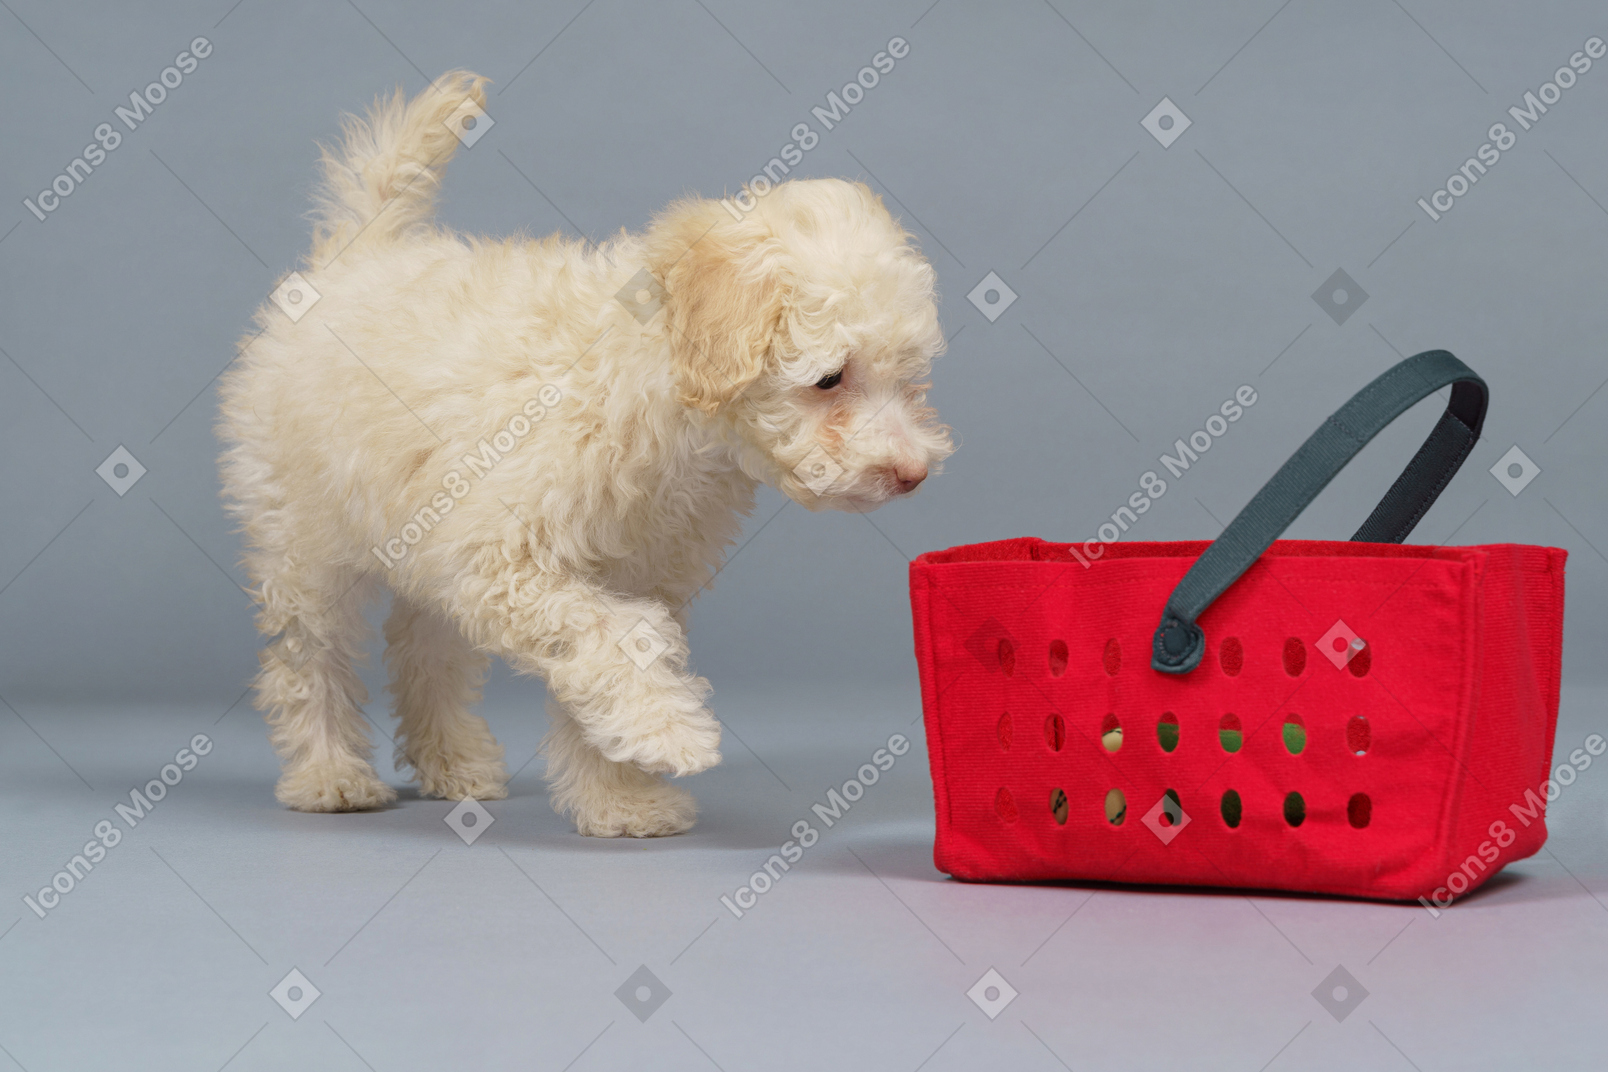 De corpo inteiro de um pequeno poodle e um carrinho de compras vermelho